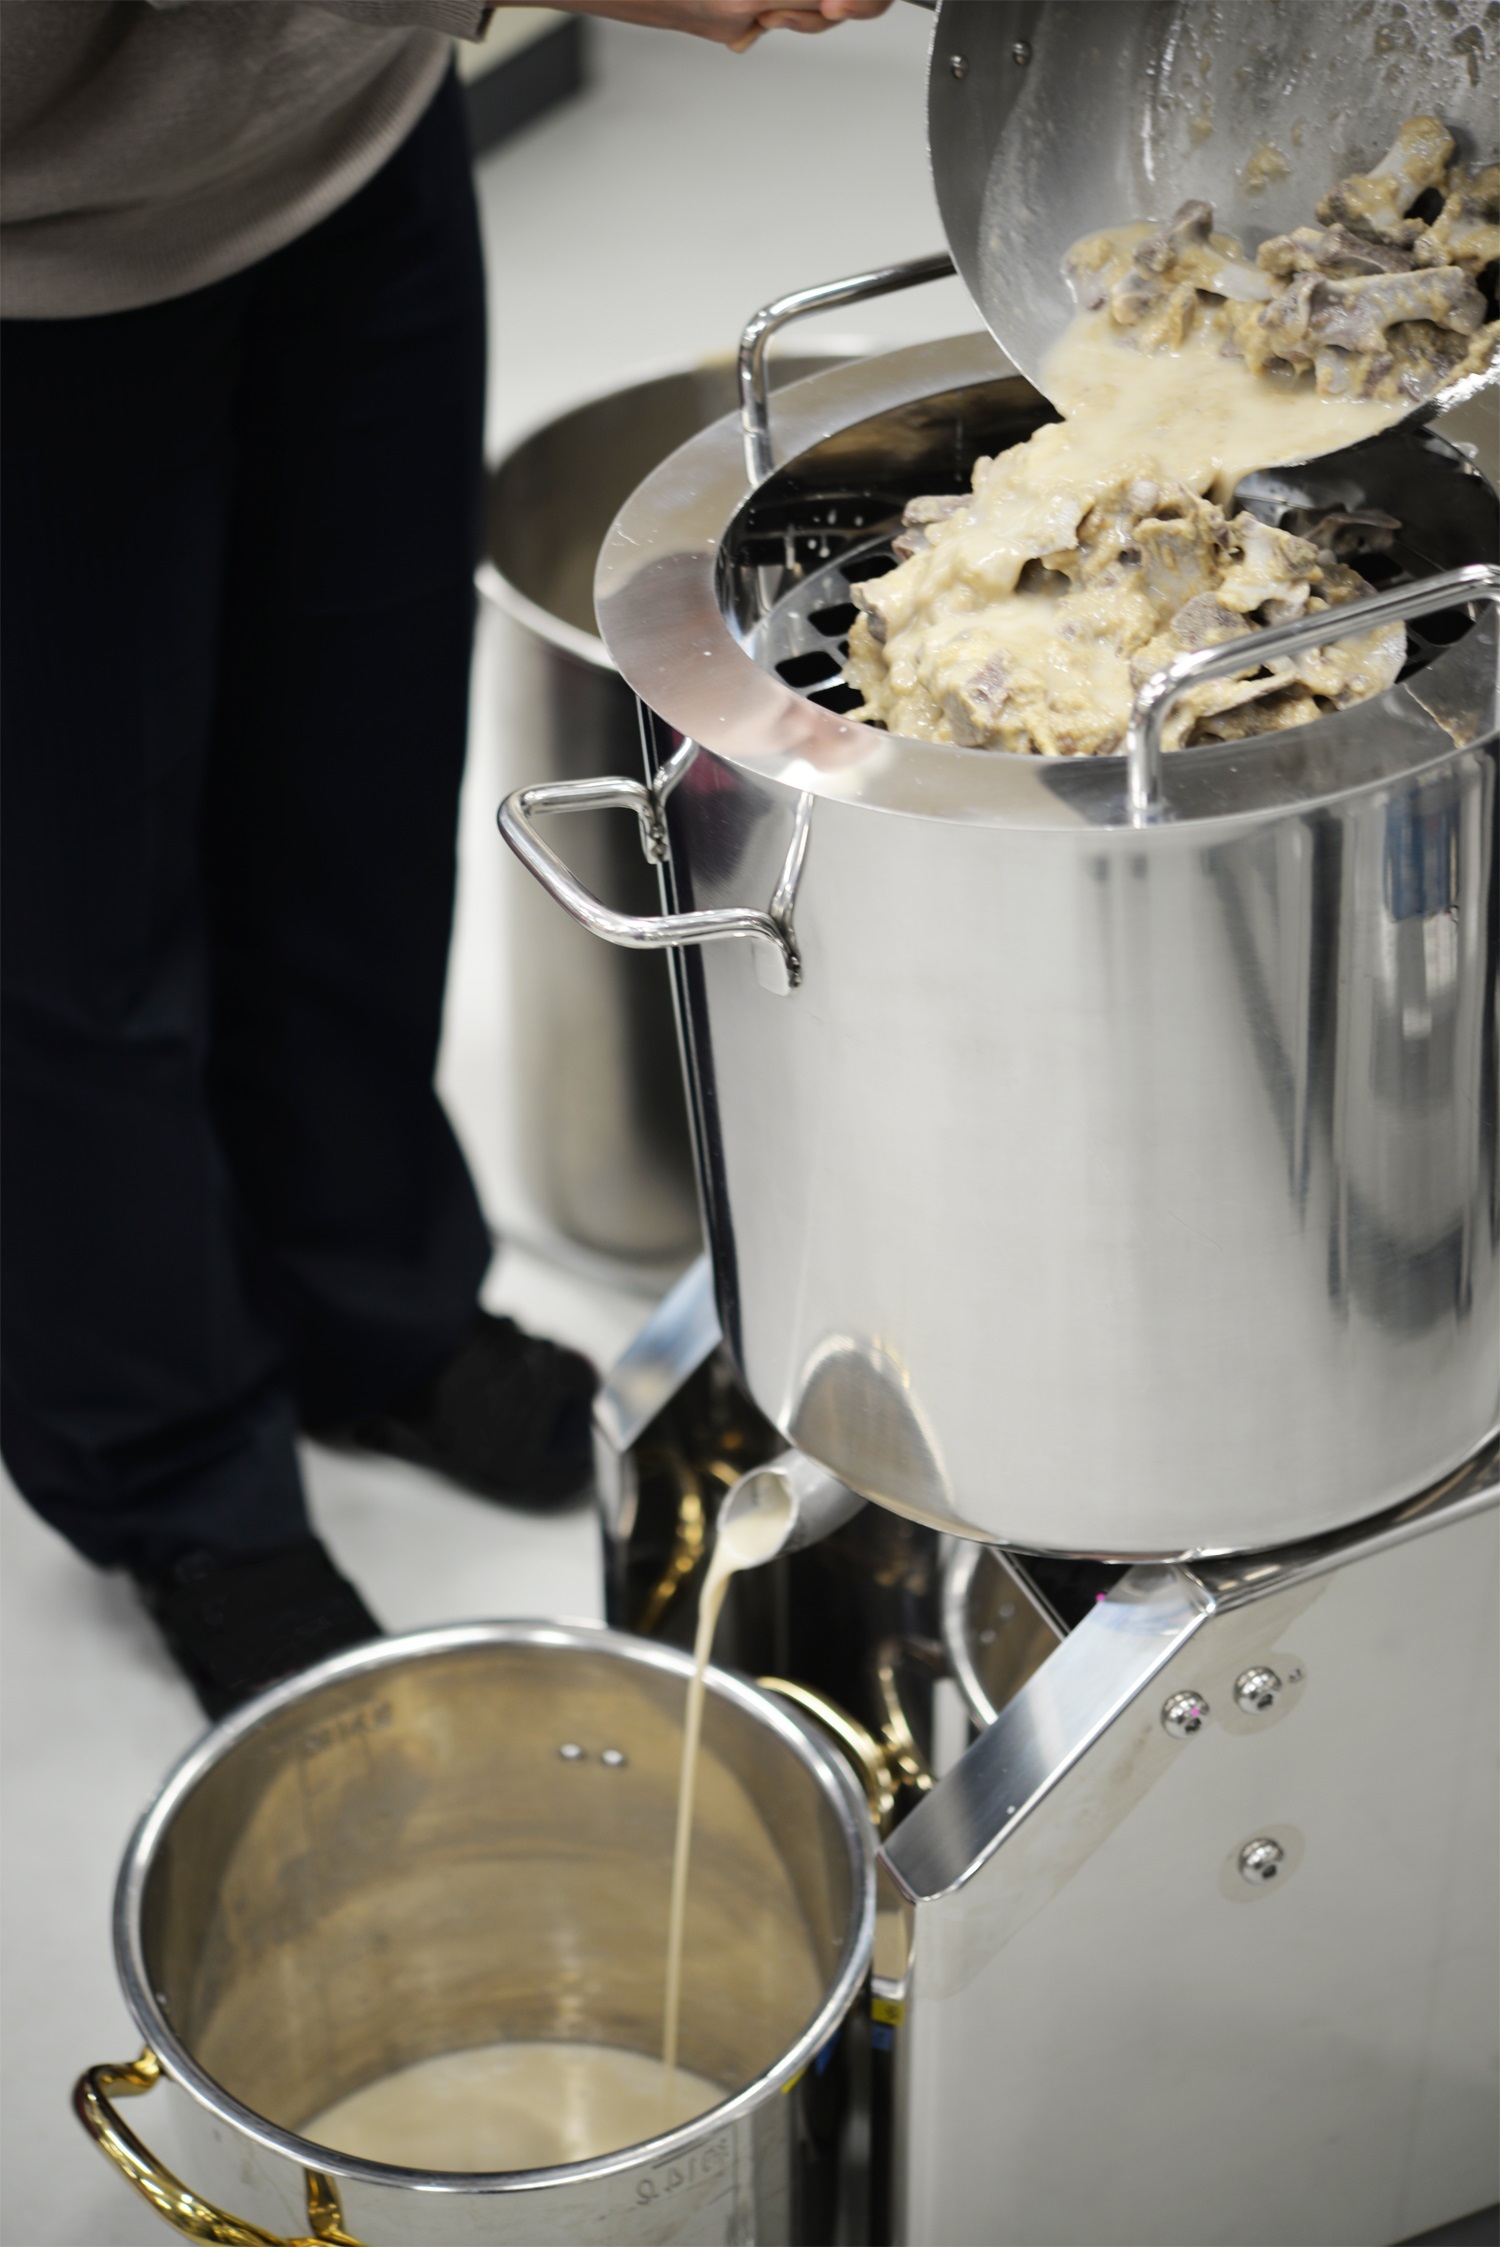 高濃度豚骨スープ60lを約5分で濾せる小型スープ濾し機が登場 ベテランも敬遠するスープ濾し負担軽減で人手不足も解消 株式会社大和製作所のプレスリリース